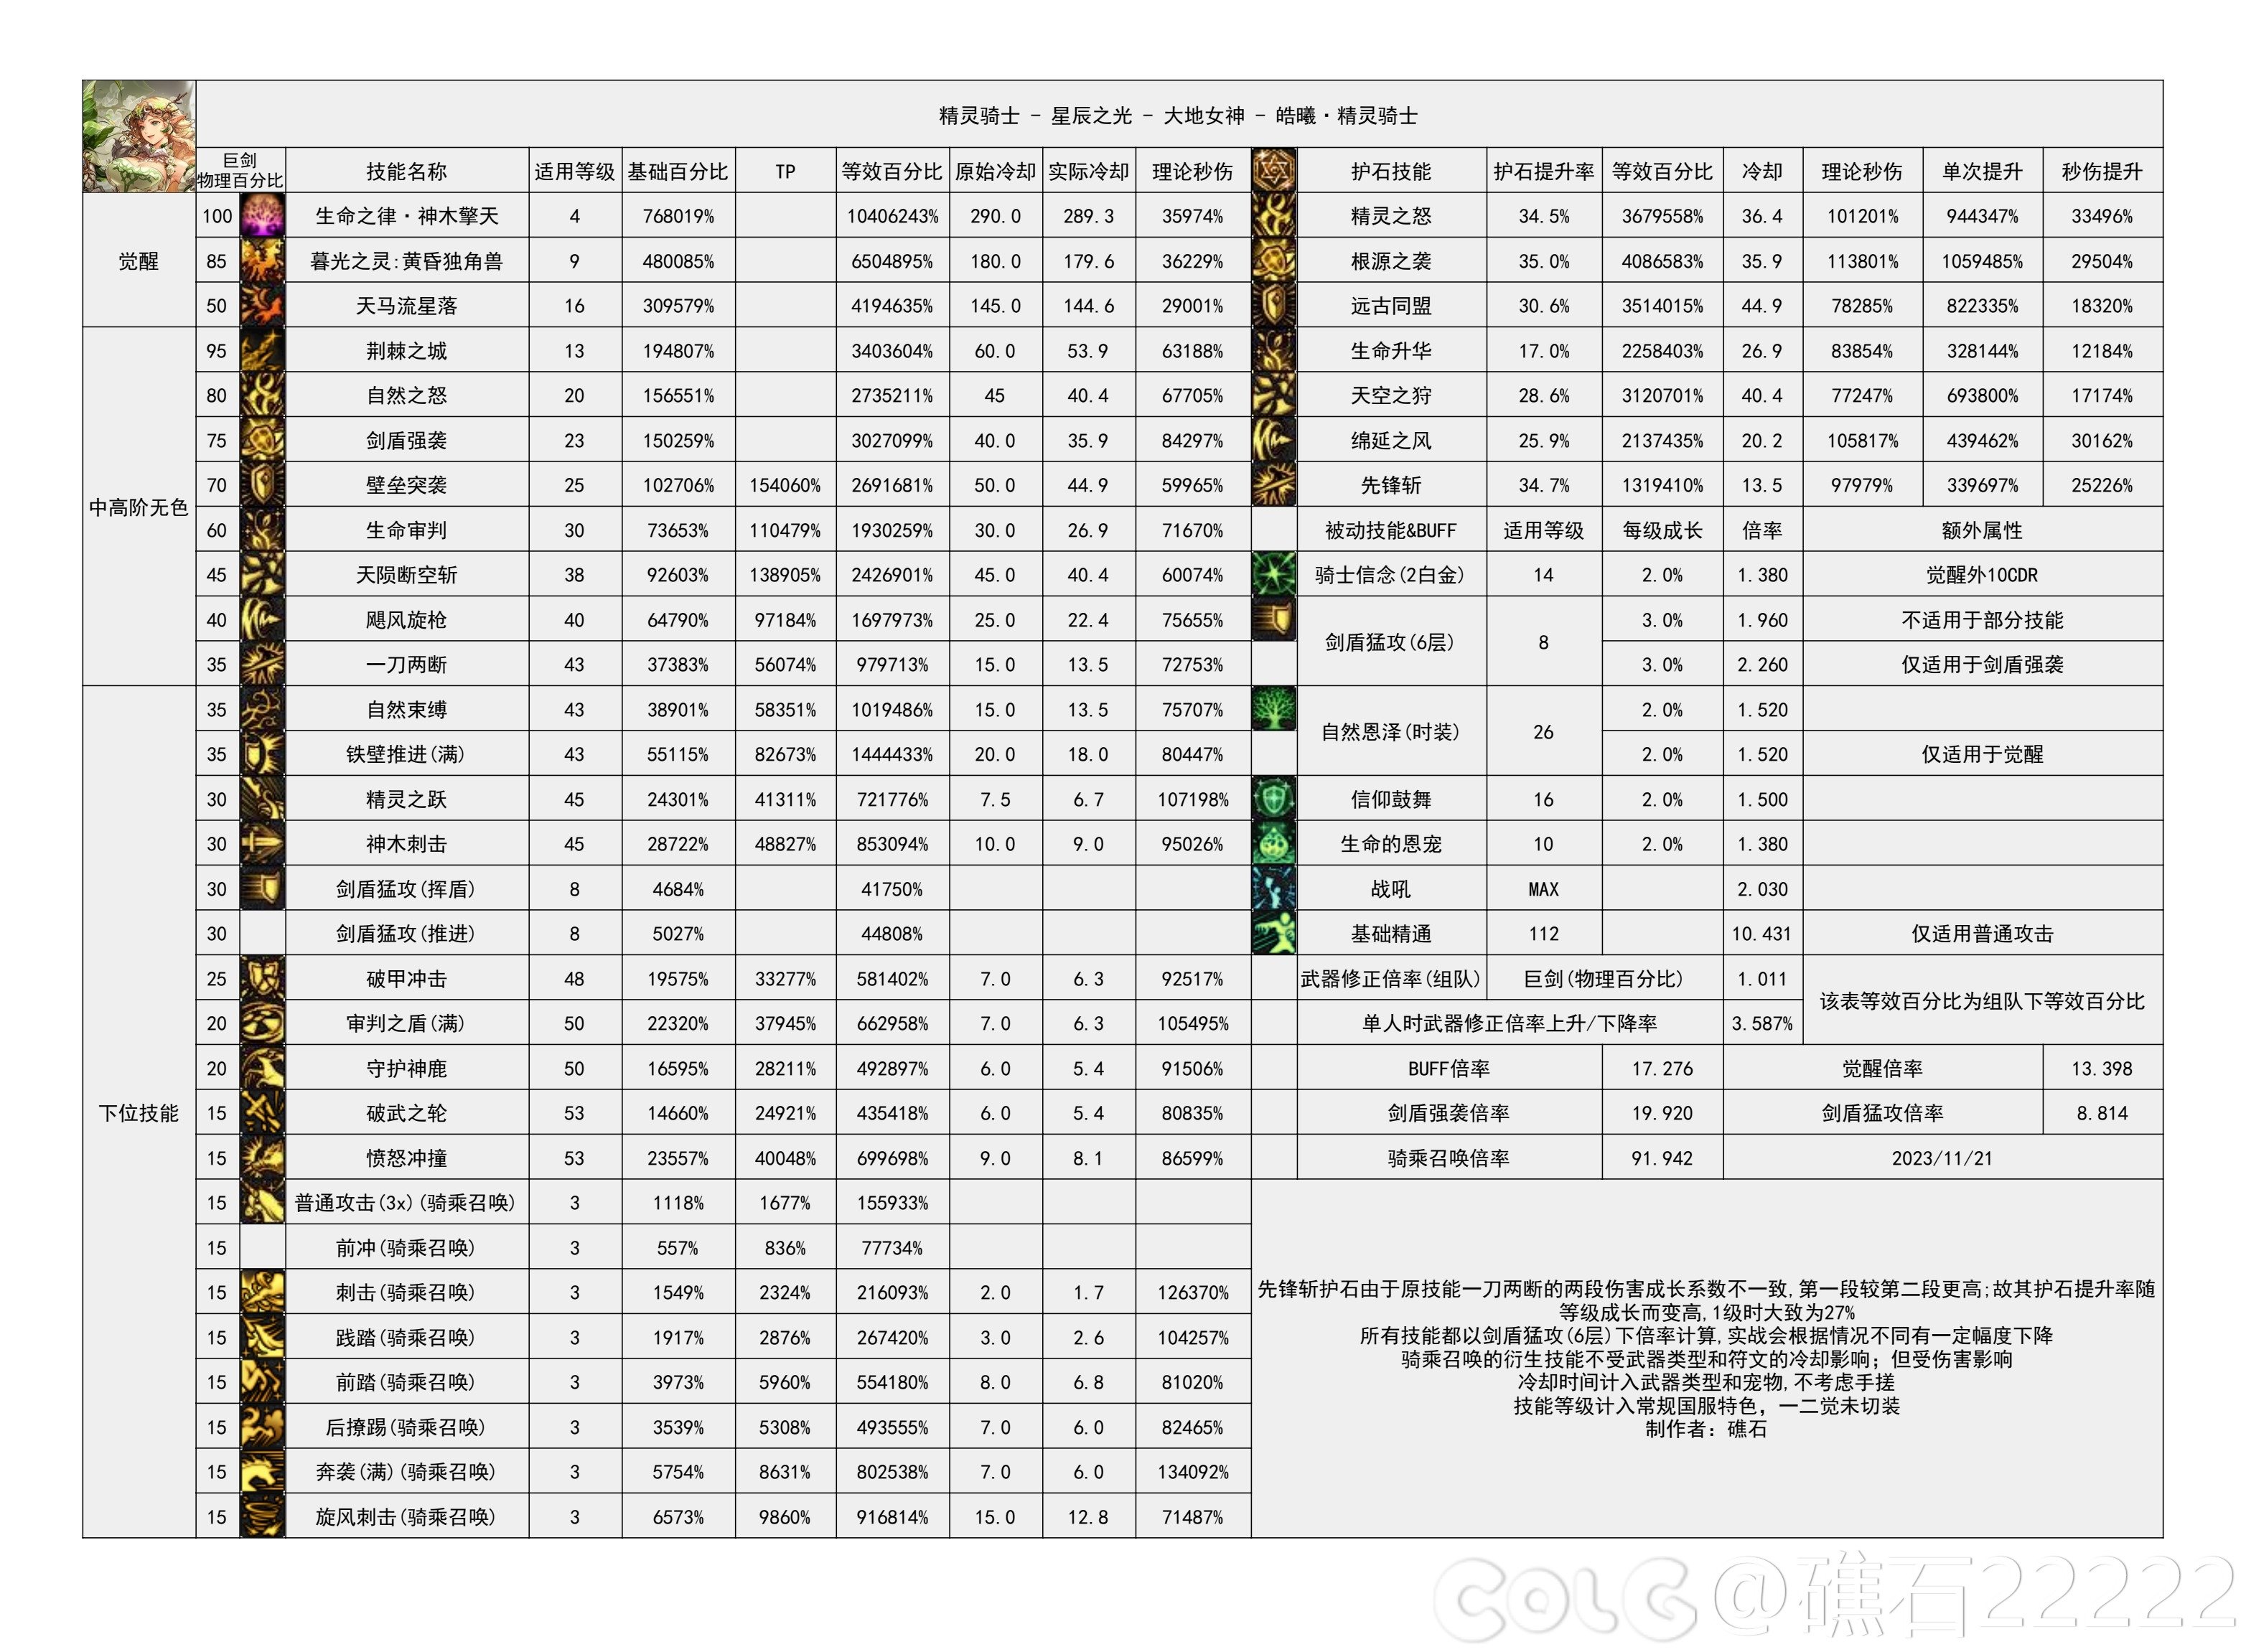 【国服现状】110版本输出职业数据表(国正5.15)(存档)65